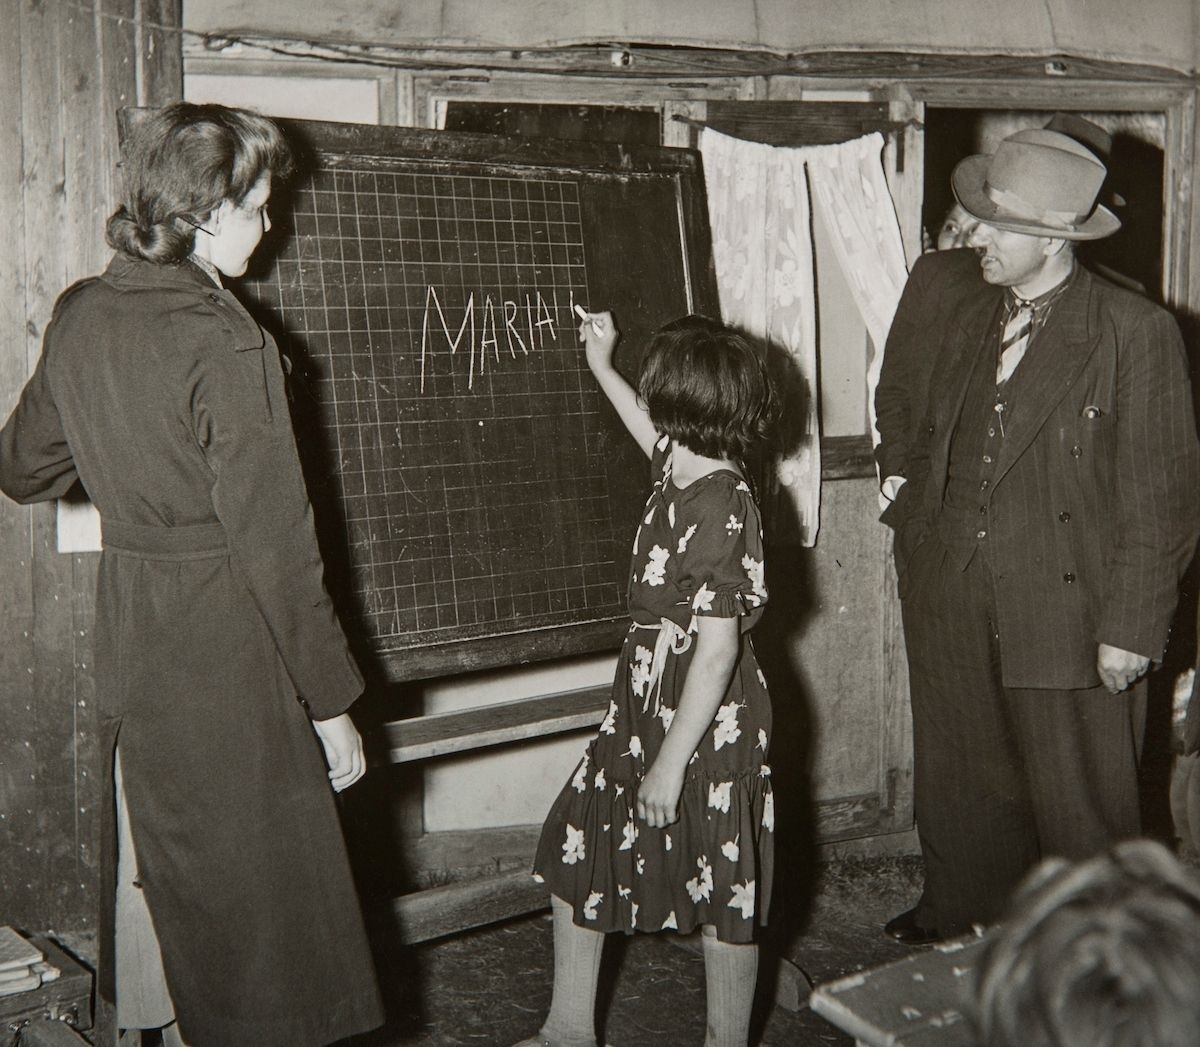 Bilden är tagen i samband med undervisning för romska barn i ett läger i Lilla Sköndal, Stockholm. En flicka skriver sitt namn på den svarta tavlan.